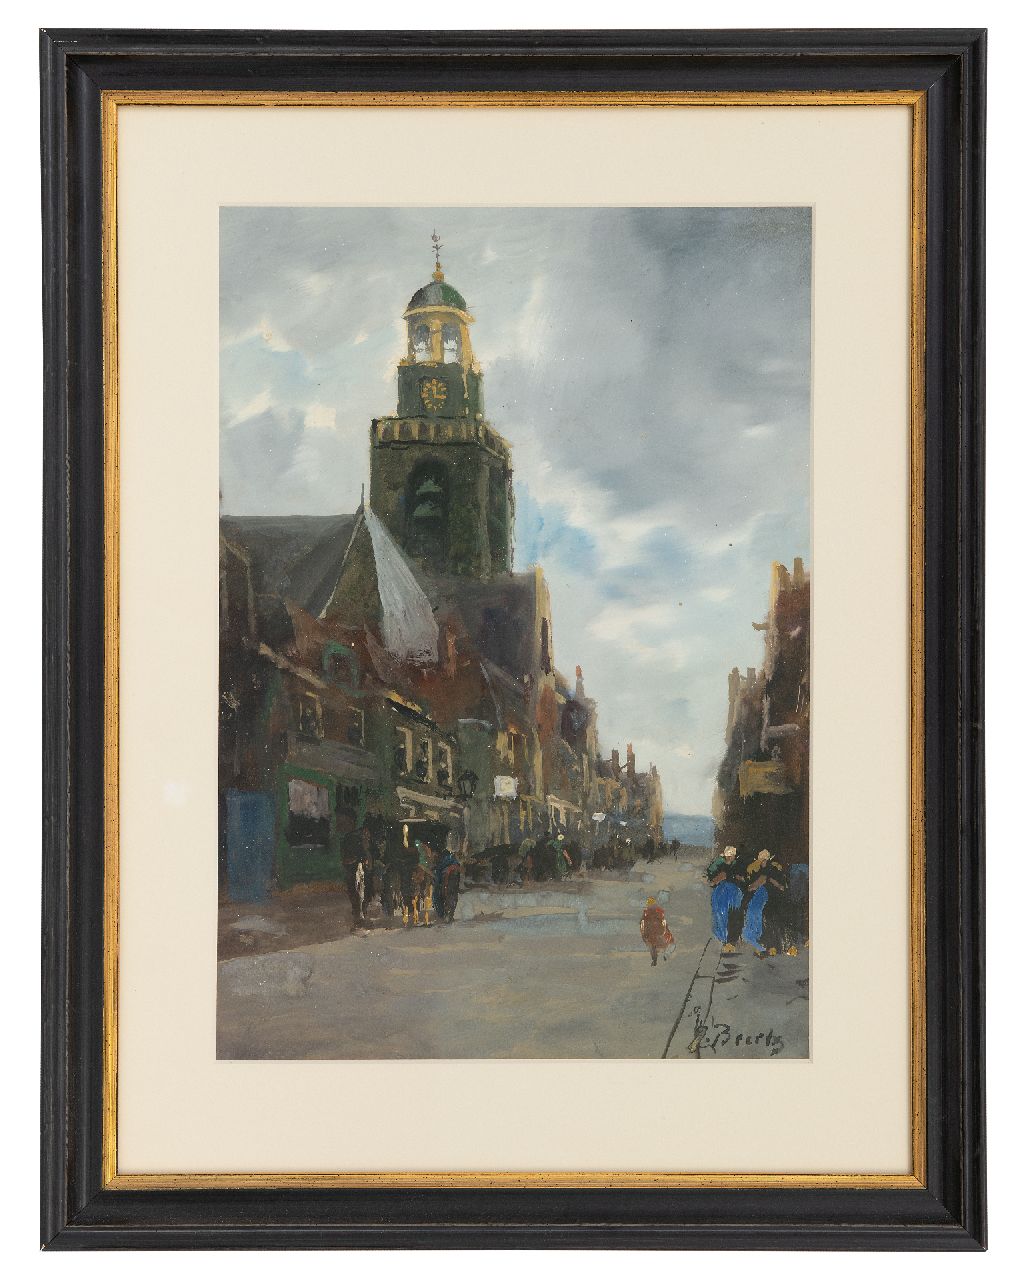 Beertz  J. | J. J. Beertz | Aquarellen en tekeningen te koop aangeboden | Dorpstraat, aquarel op papier 38,0 x 26,5 cm, gesigneerd rechtsonder